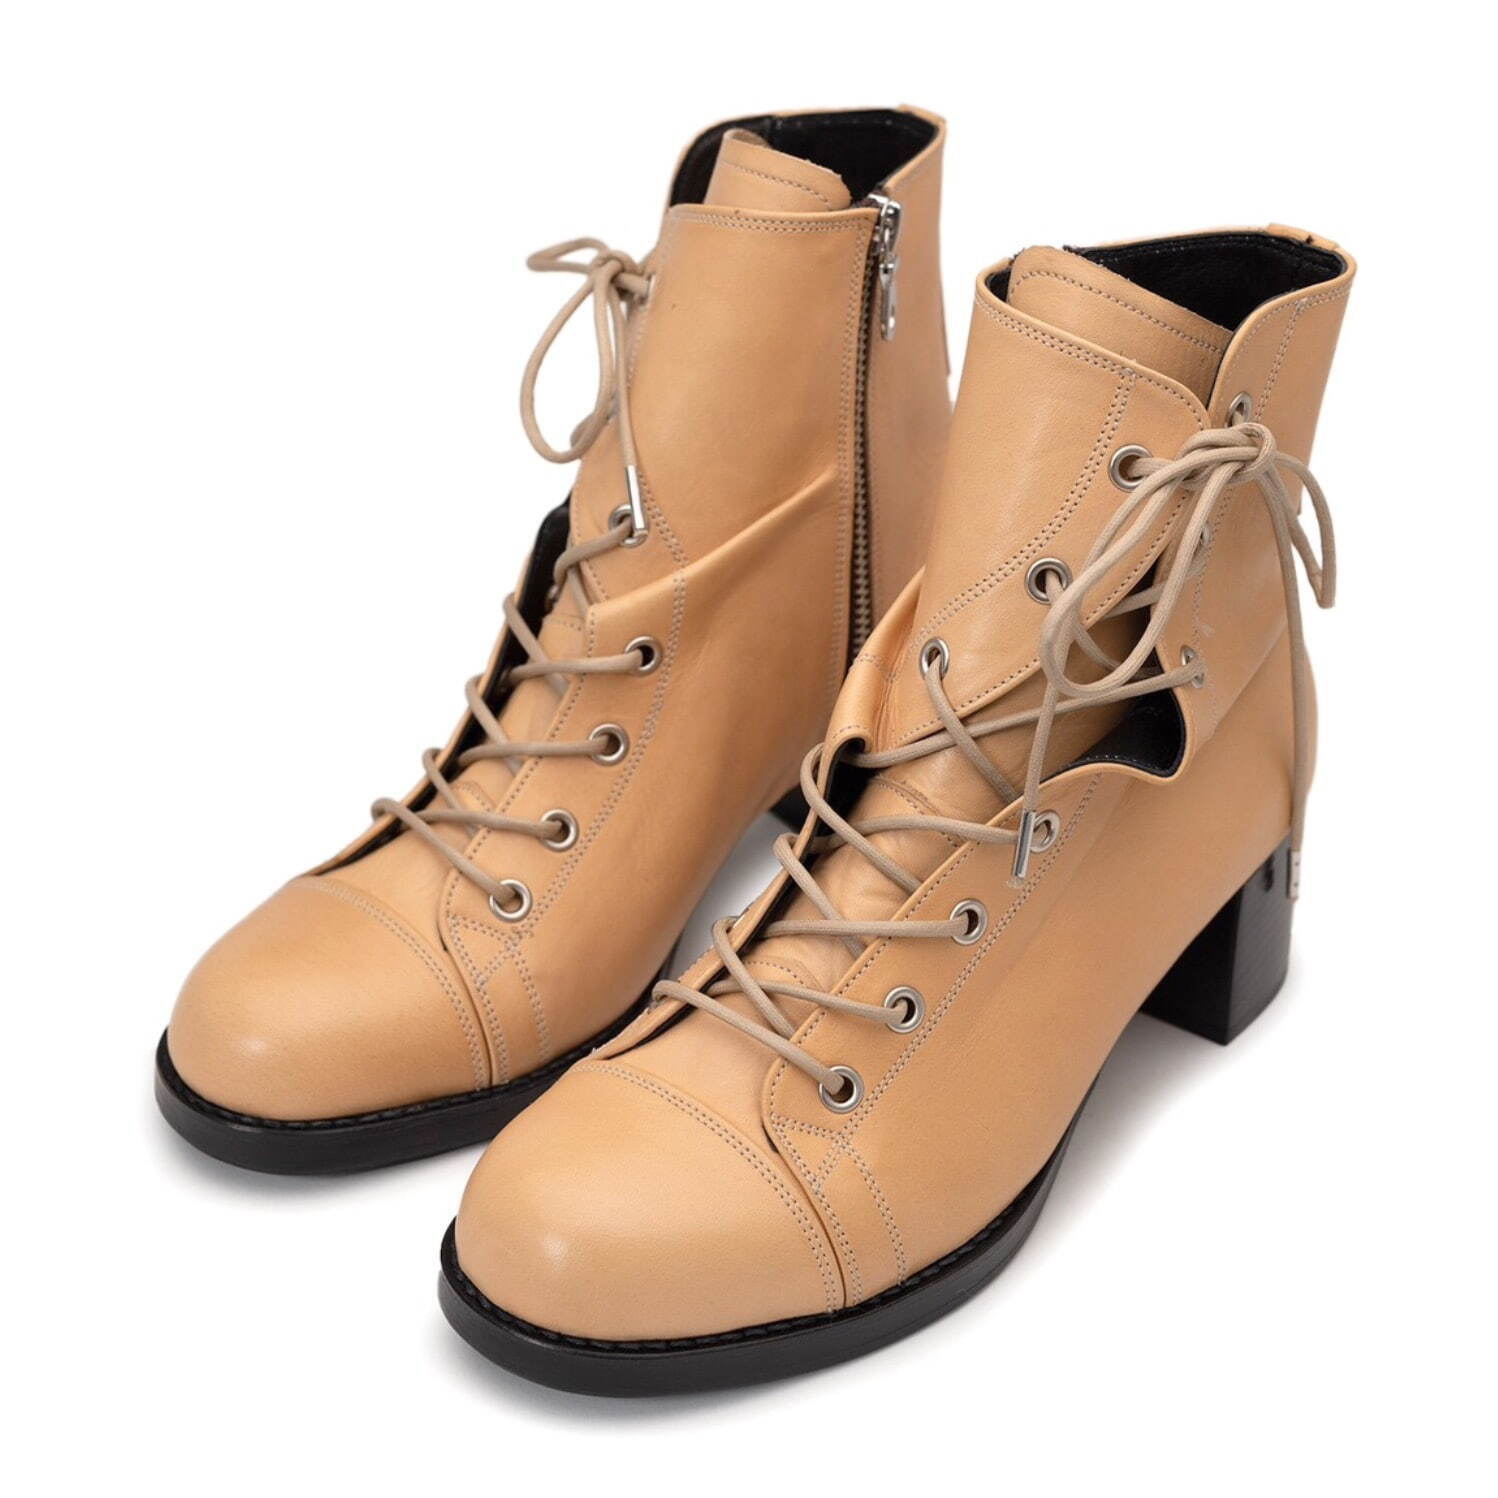 〈ウィメンズ〉 Twisted Leather Boots 59,400円